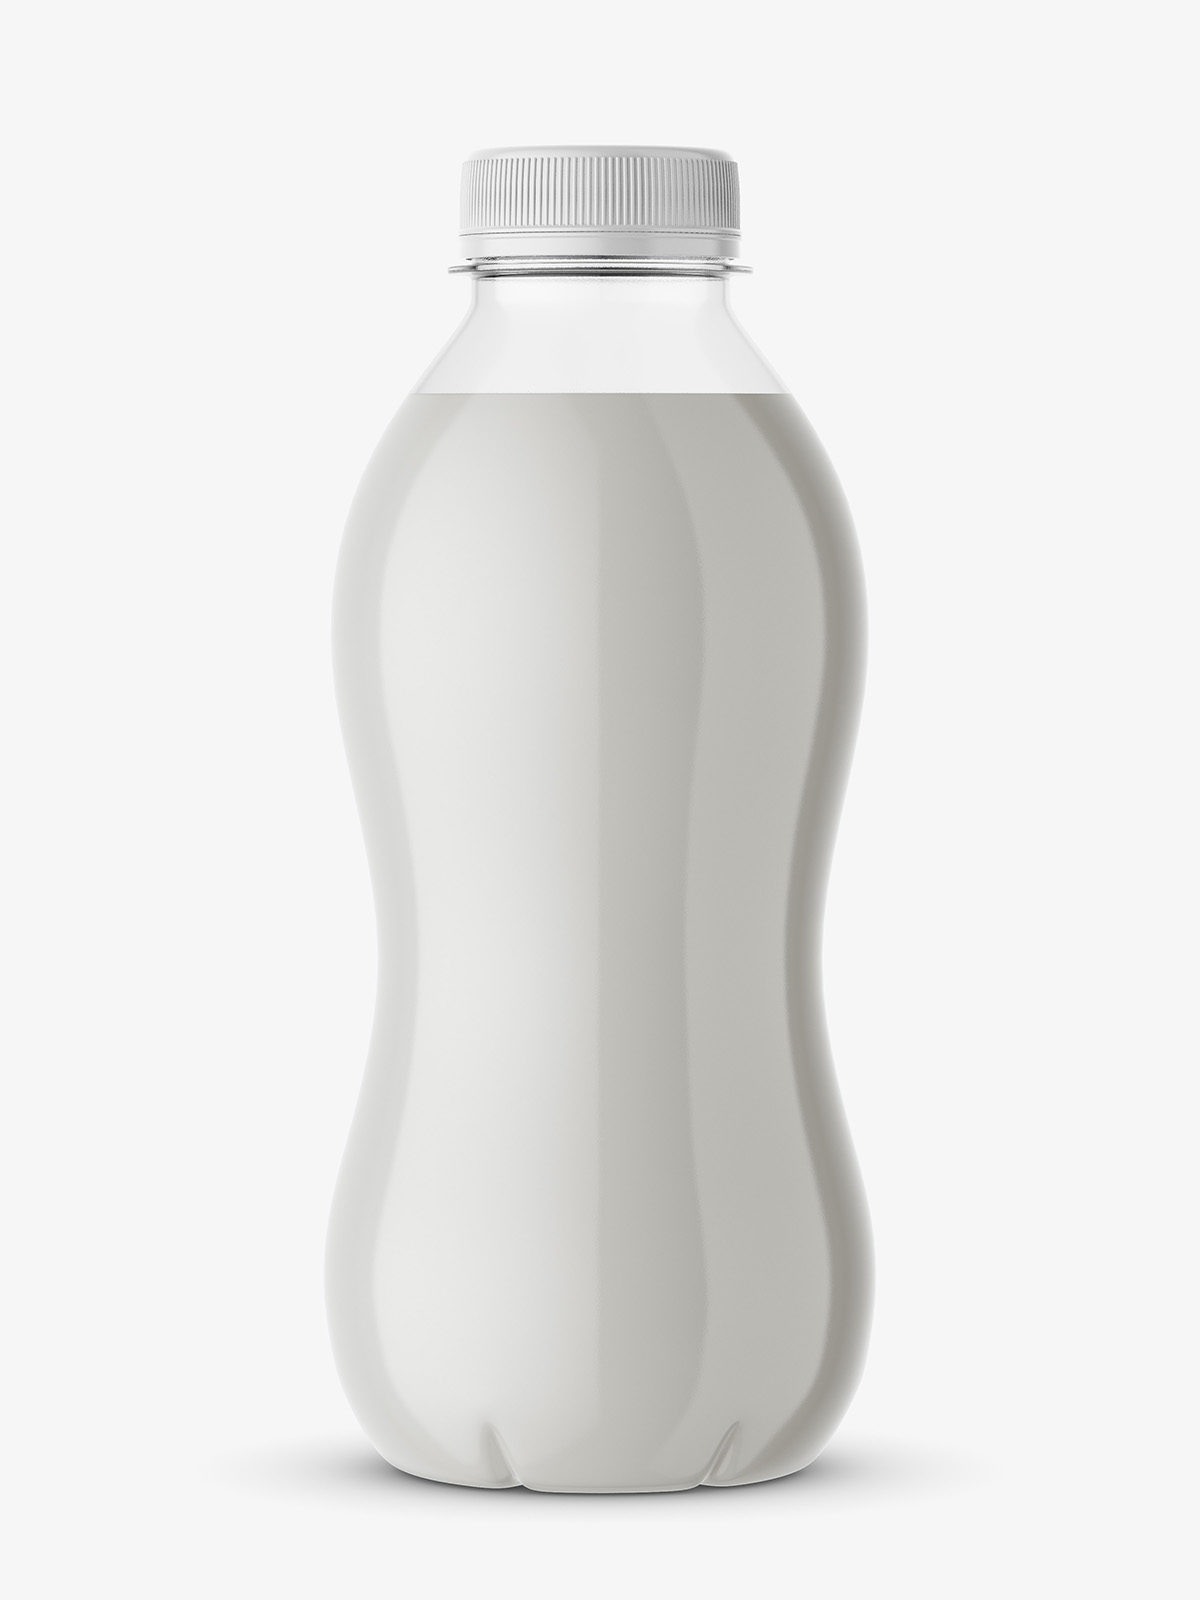 Download Milk bottle mockup - Smarty Mockups